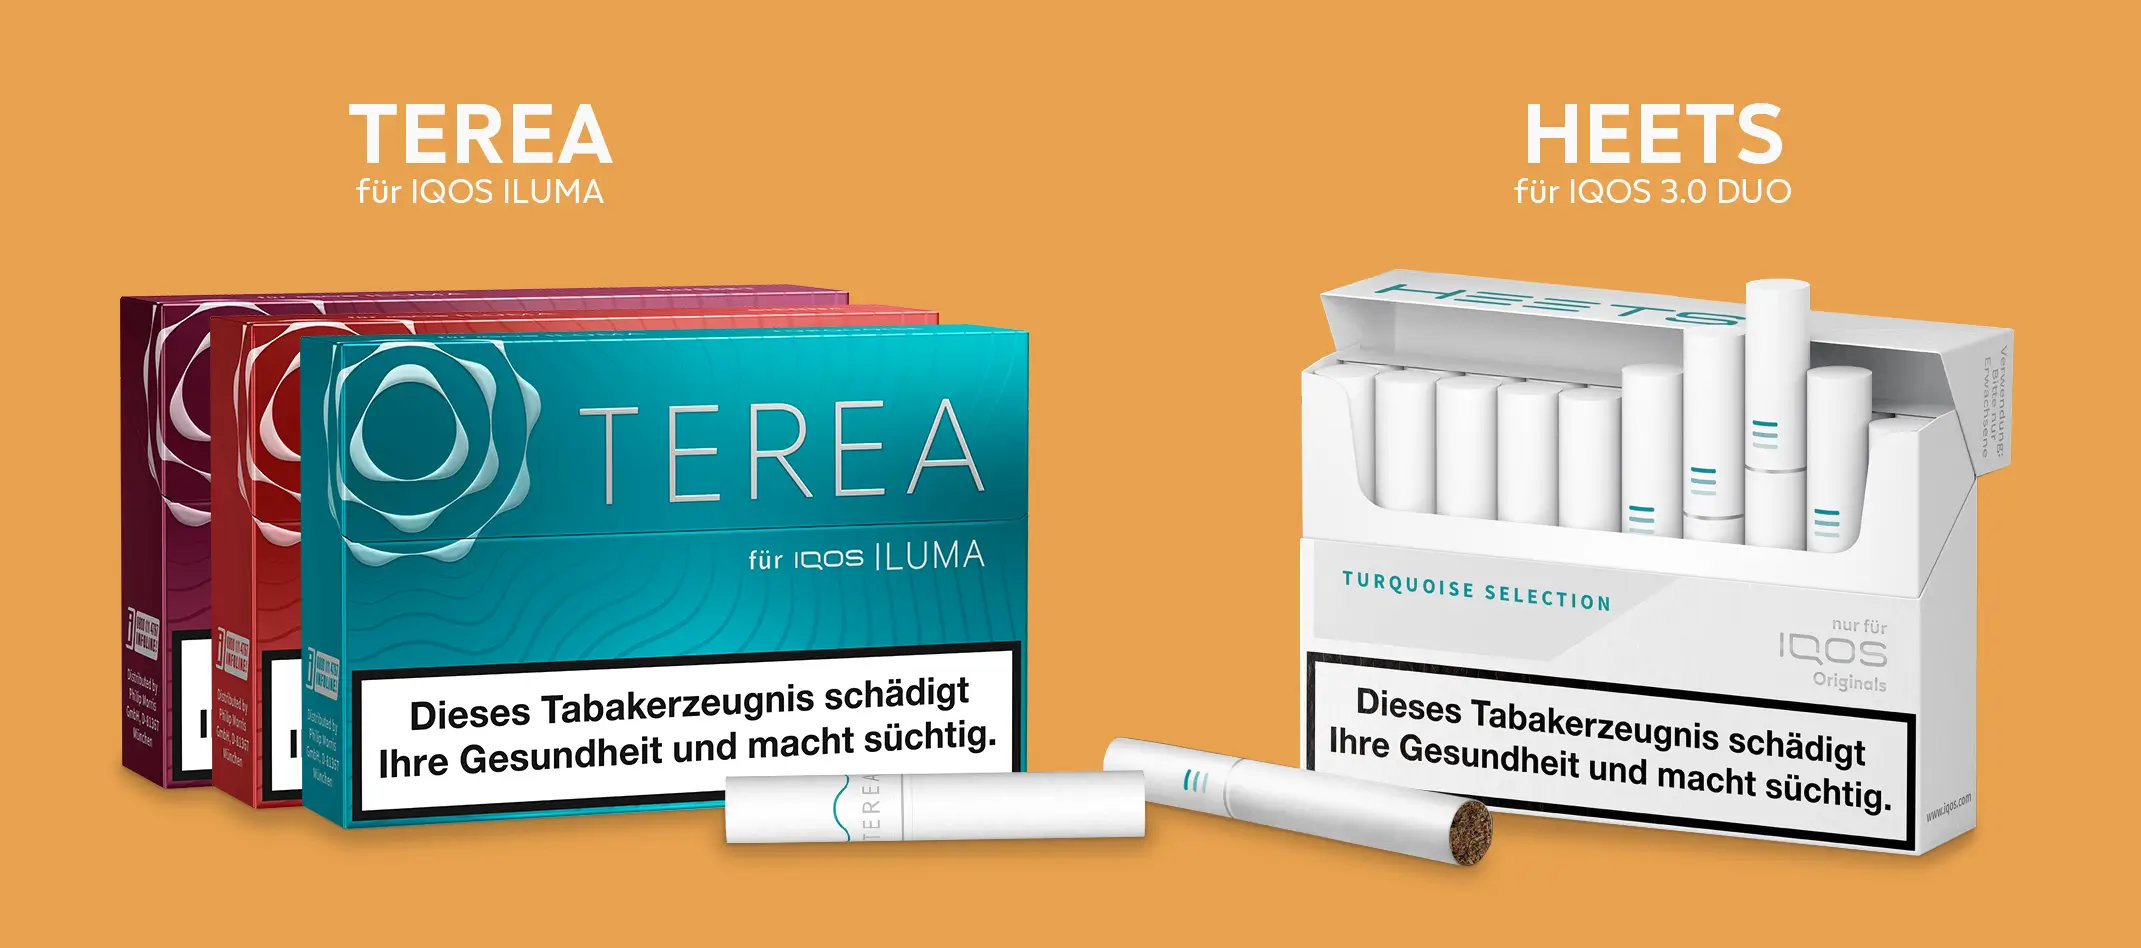 Die Terea und Heets Tabakerhitzersticks vor orangenem Hintergrund 